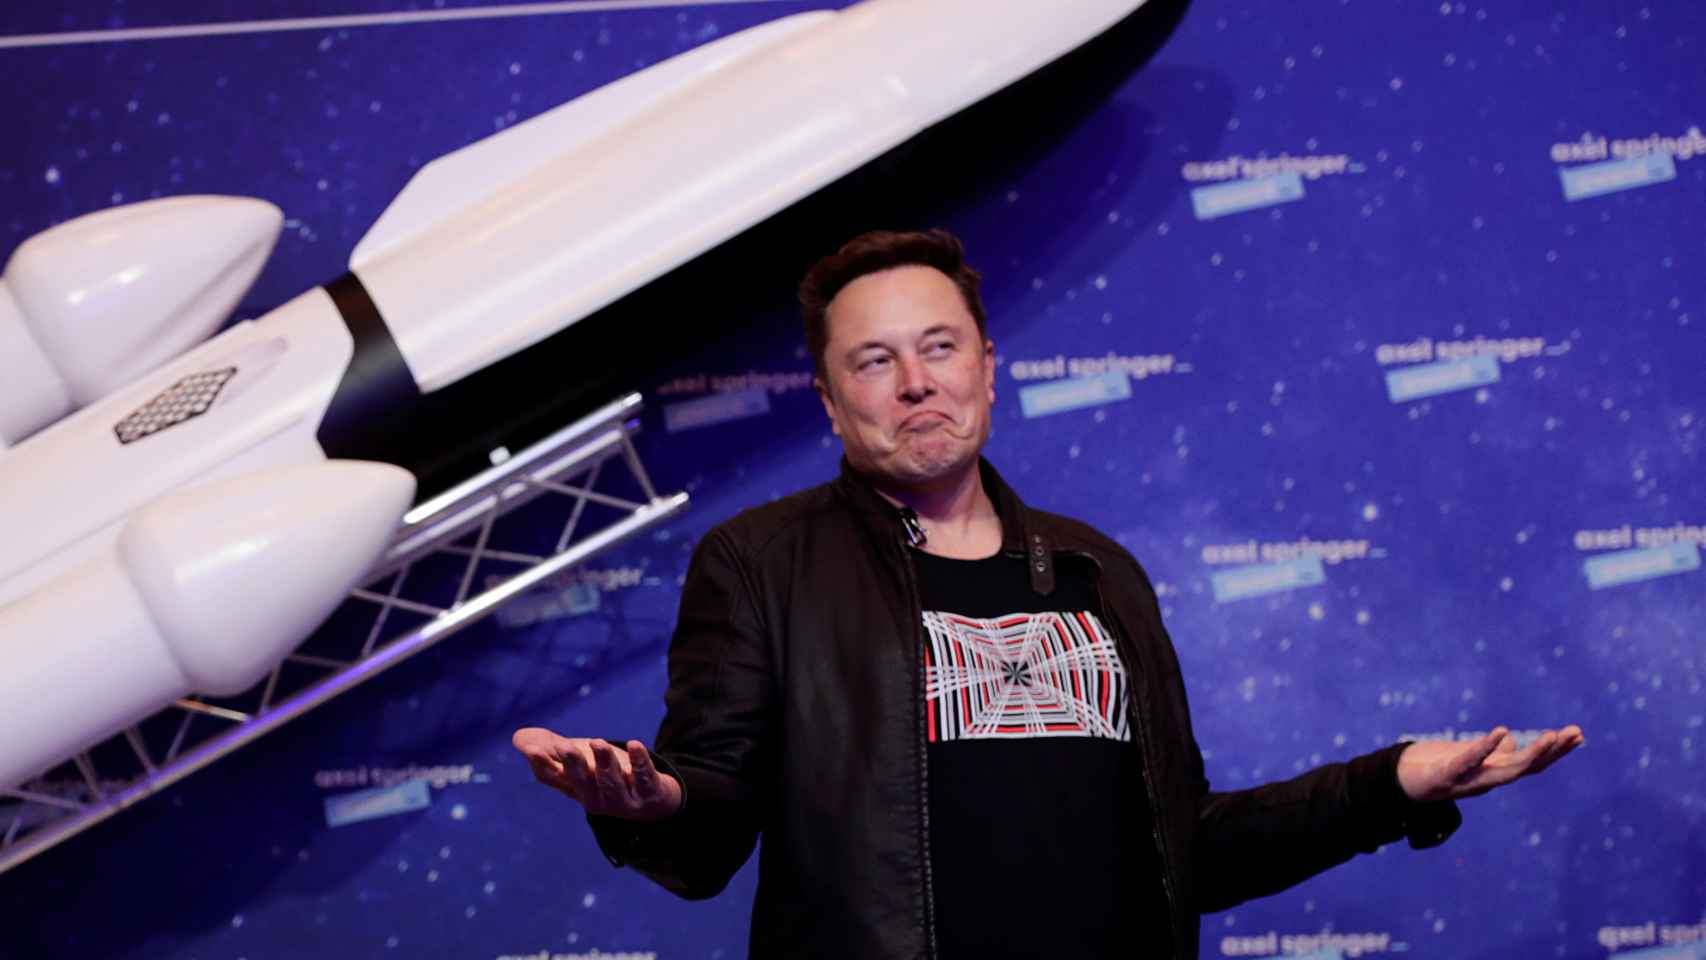 Elon Musk at an event in Berlin.